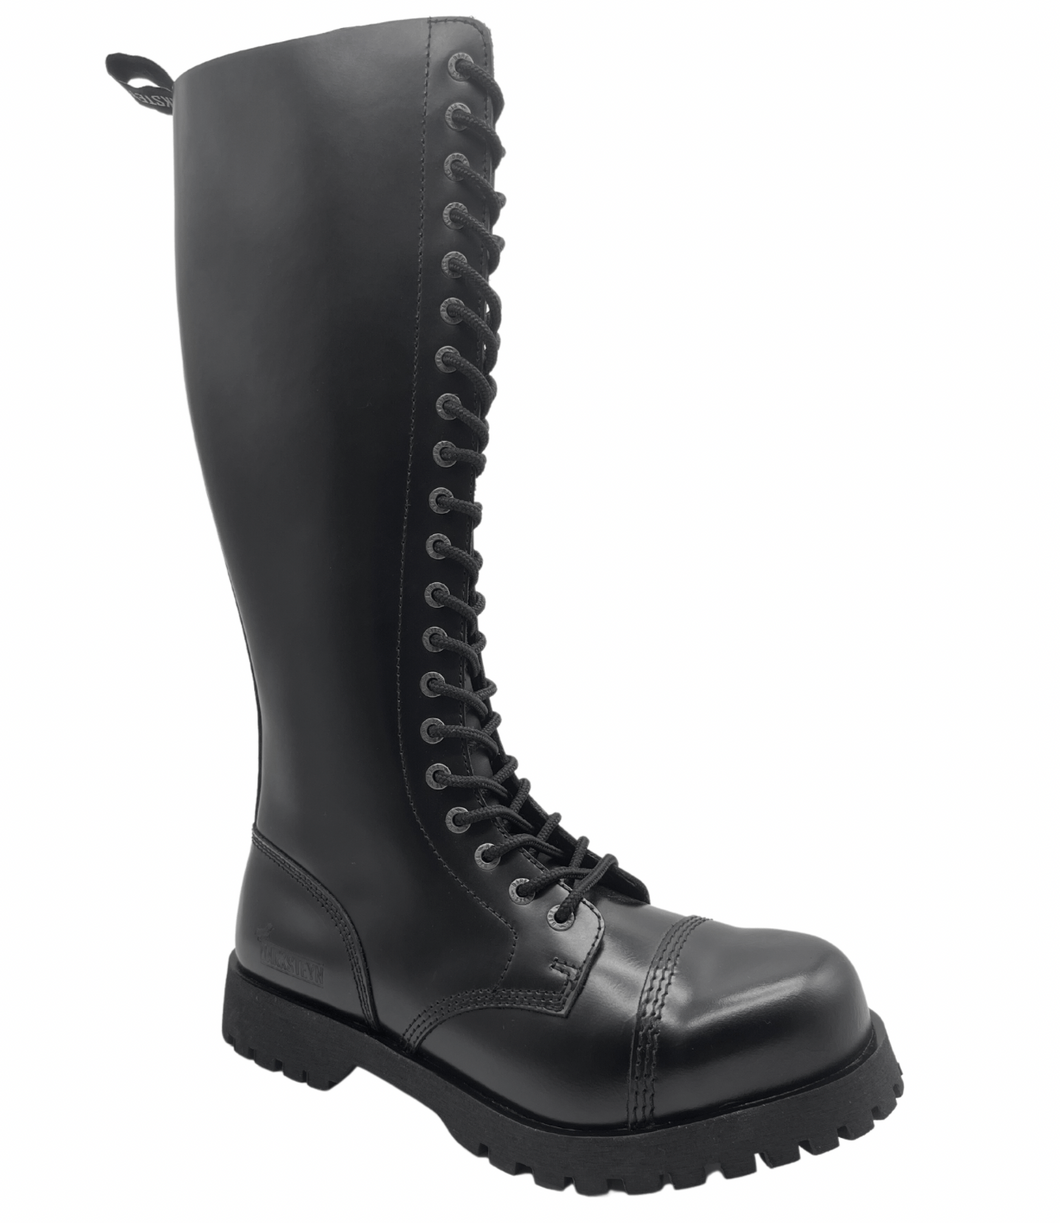 Darksteyn Schuhe 20 Eye Ranger Premium Boots Black Springerstiefel